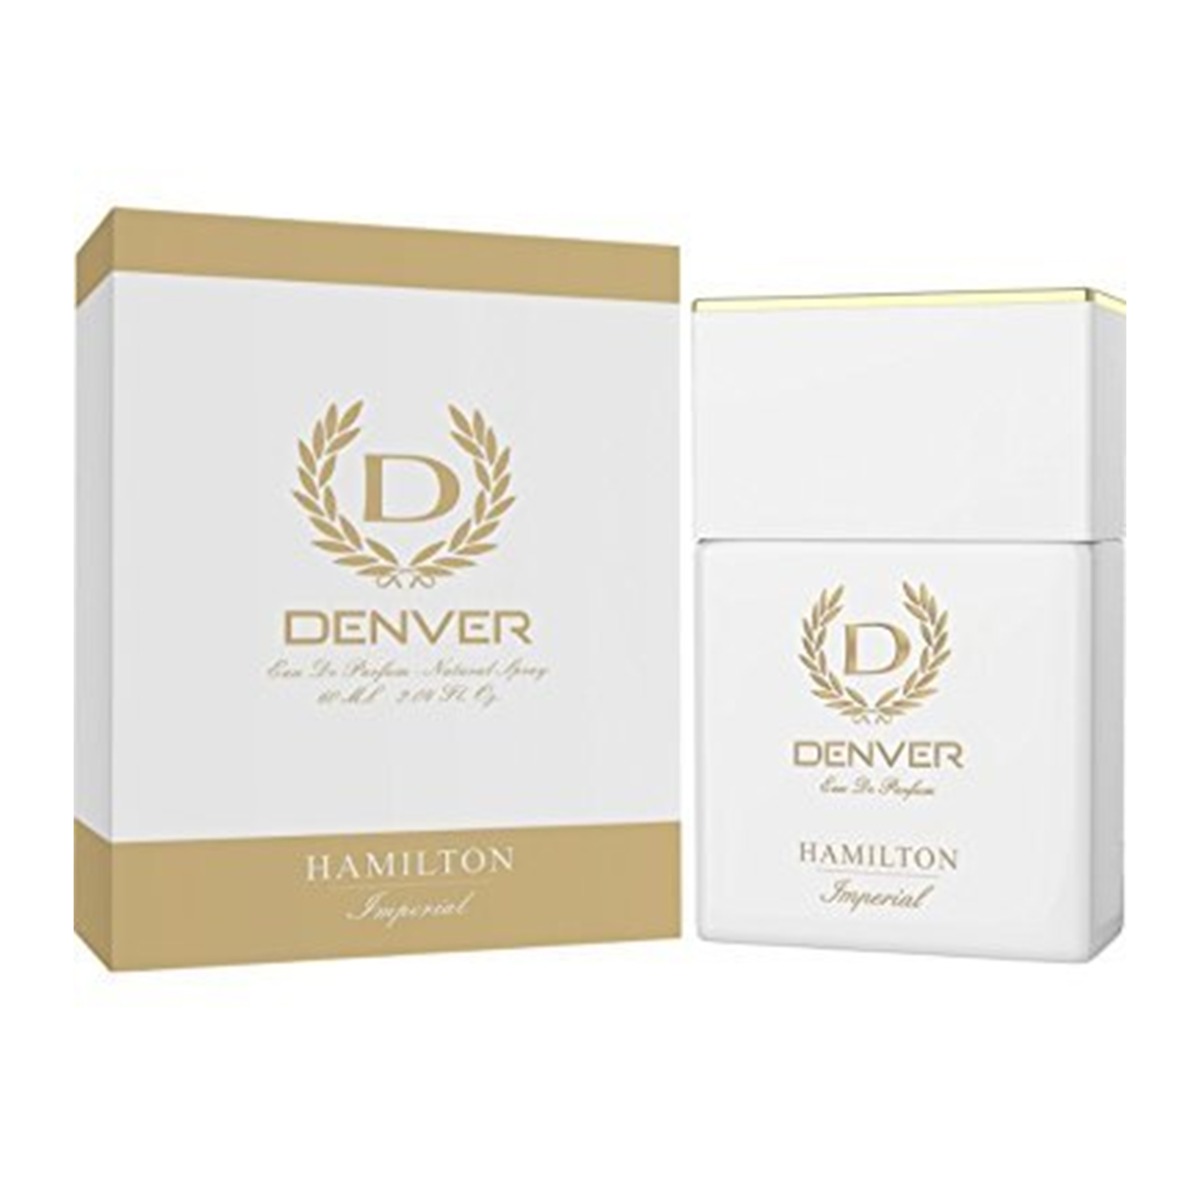 Denver Hamilton Imperial Eau De Parfum, 60ml